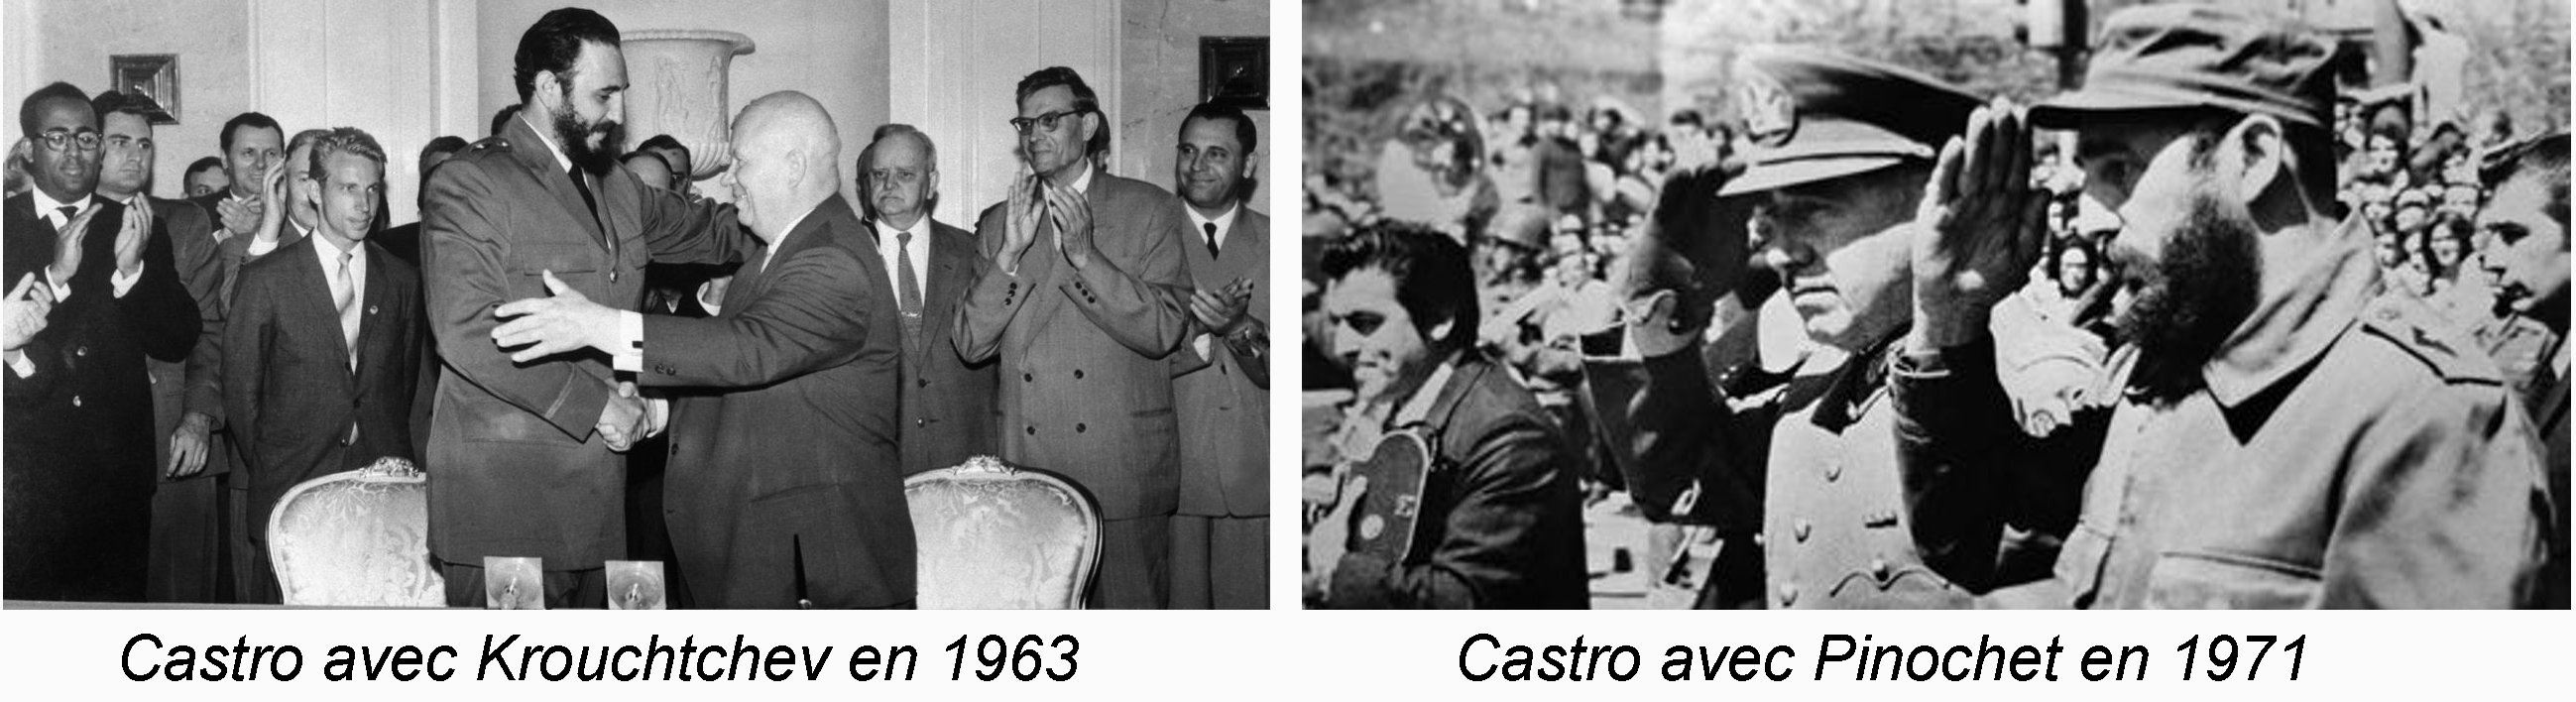 Les trotskystes et la révolution cubaine